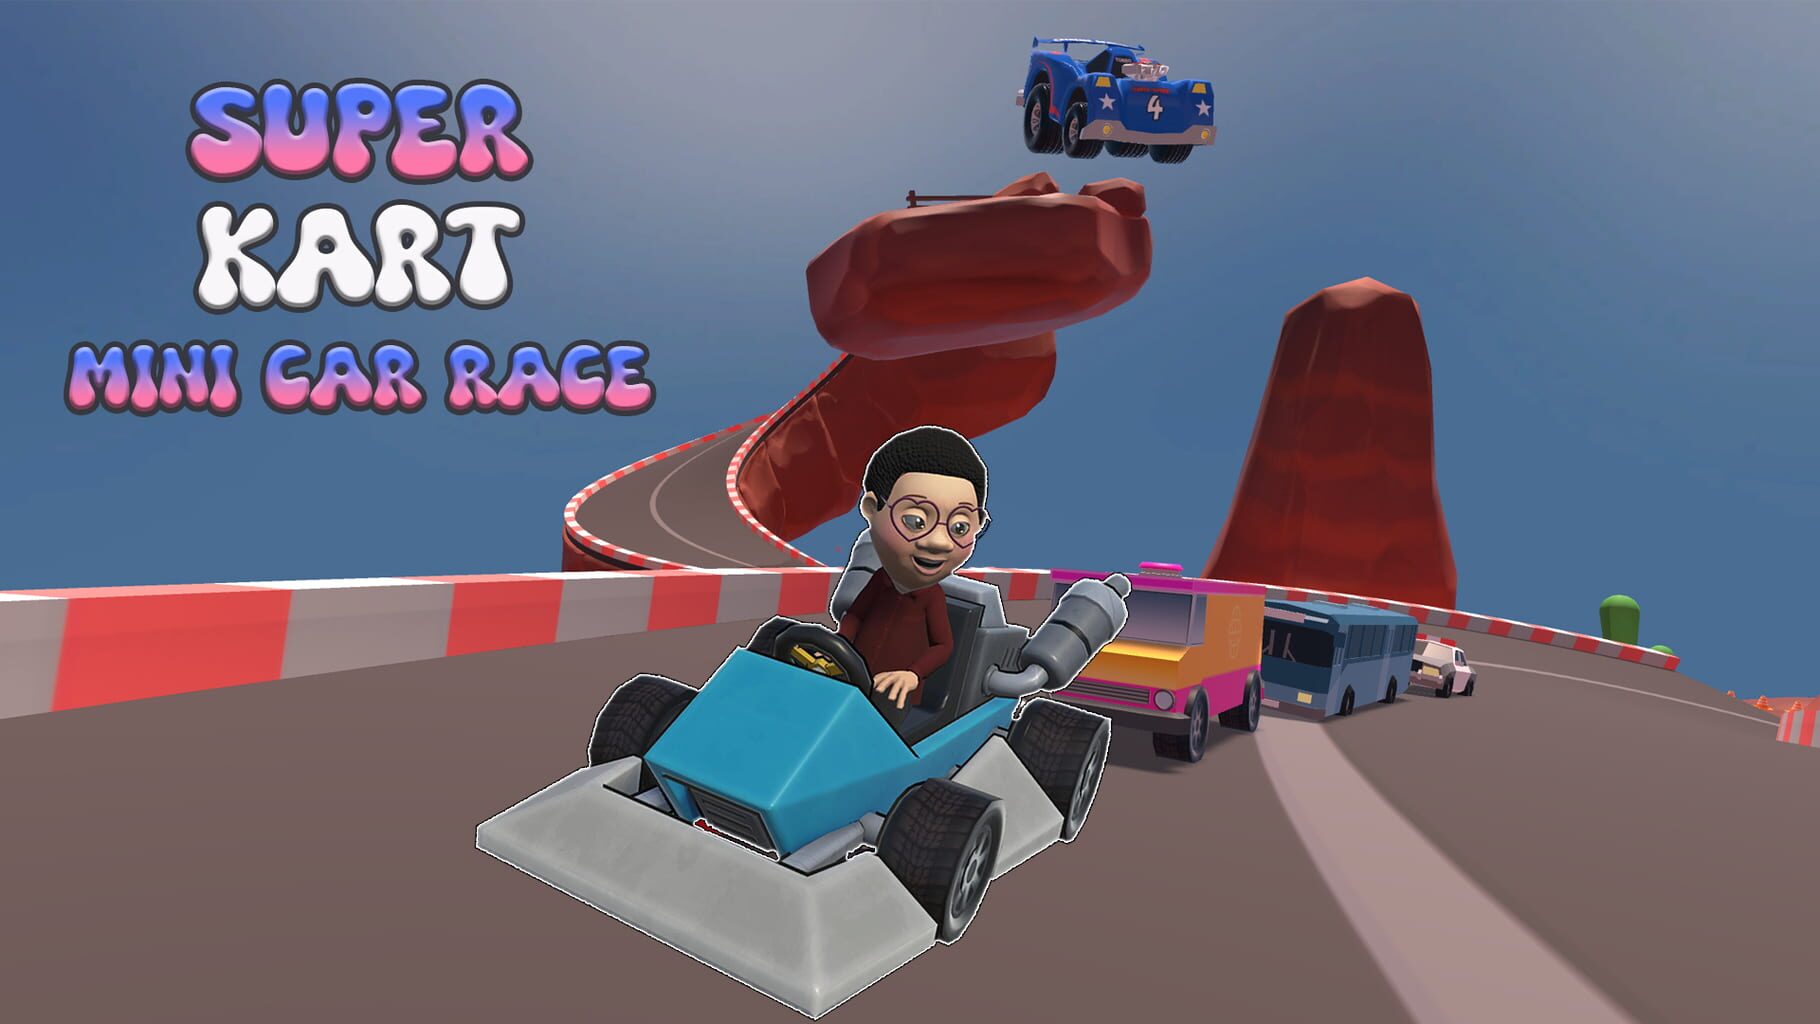 Super Kart Mini Car Race Image